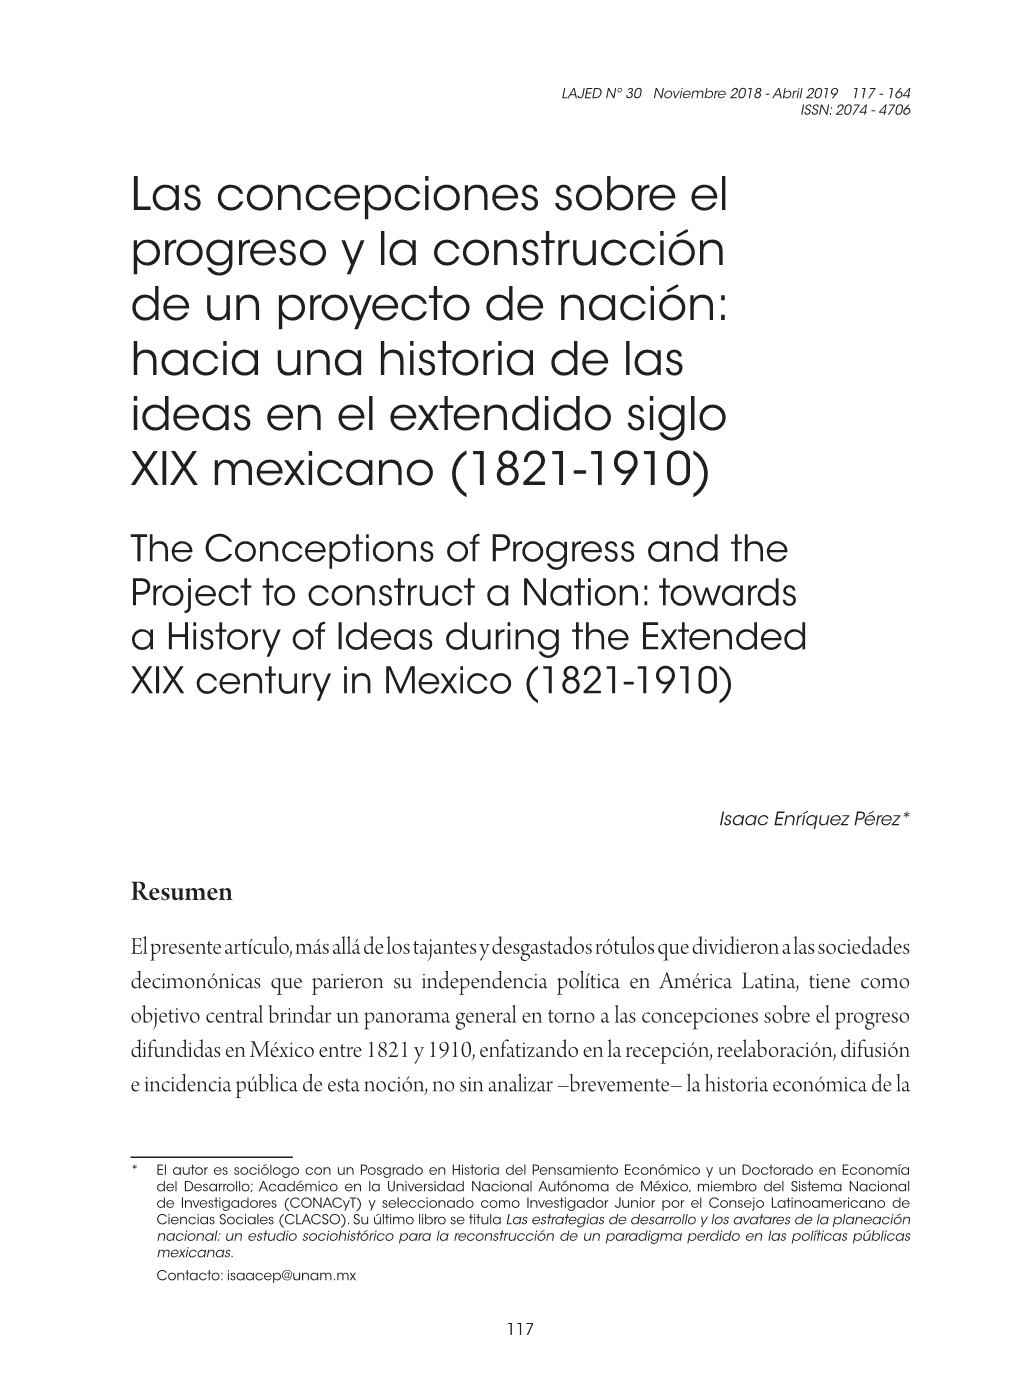 Las Concepciones Sobre El Progreso Y La Construcción De Un Proyecto De Nación: Hacia Una Historia De Las Ideas En El Extendido Siglo XIX Mexicano (1821-1910)